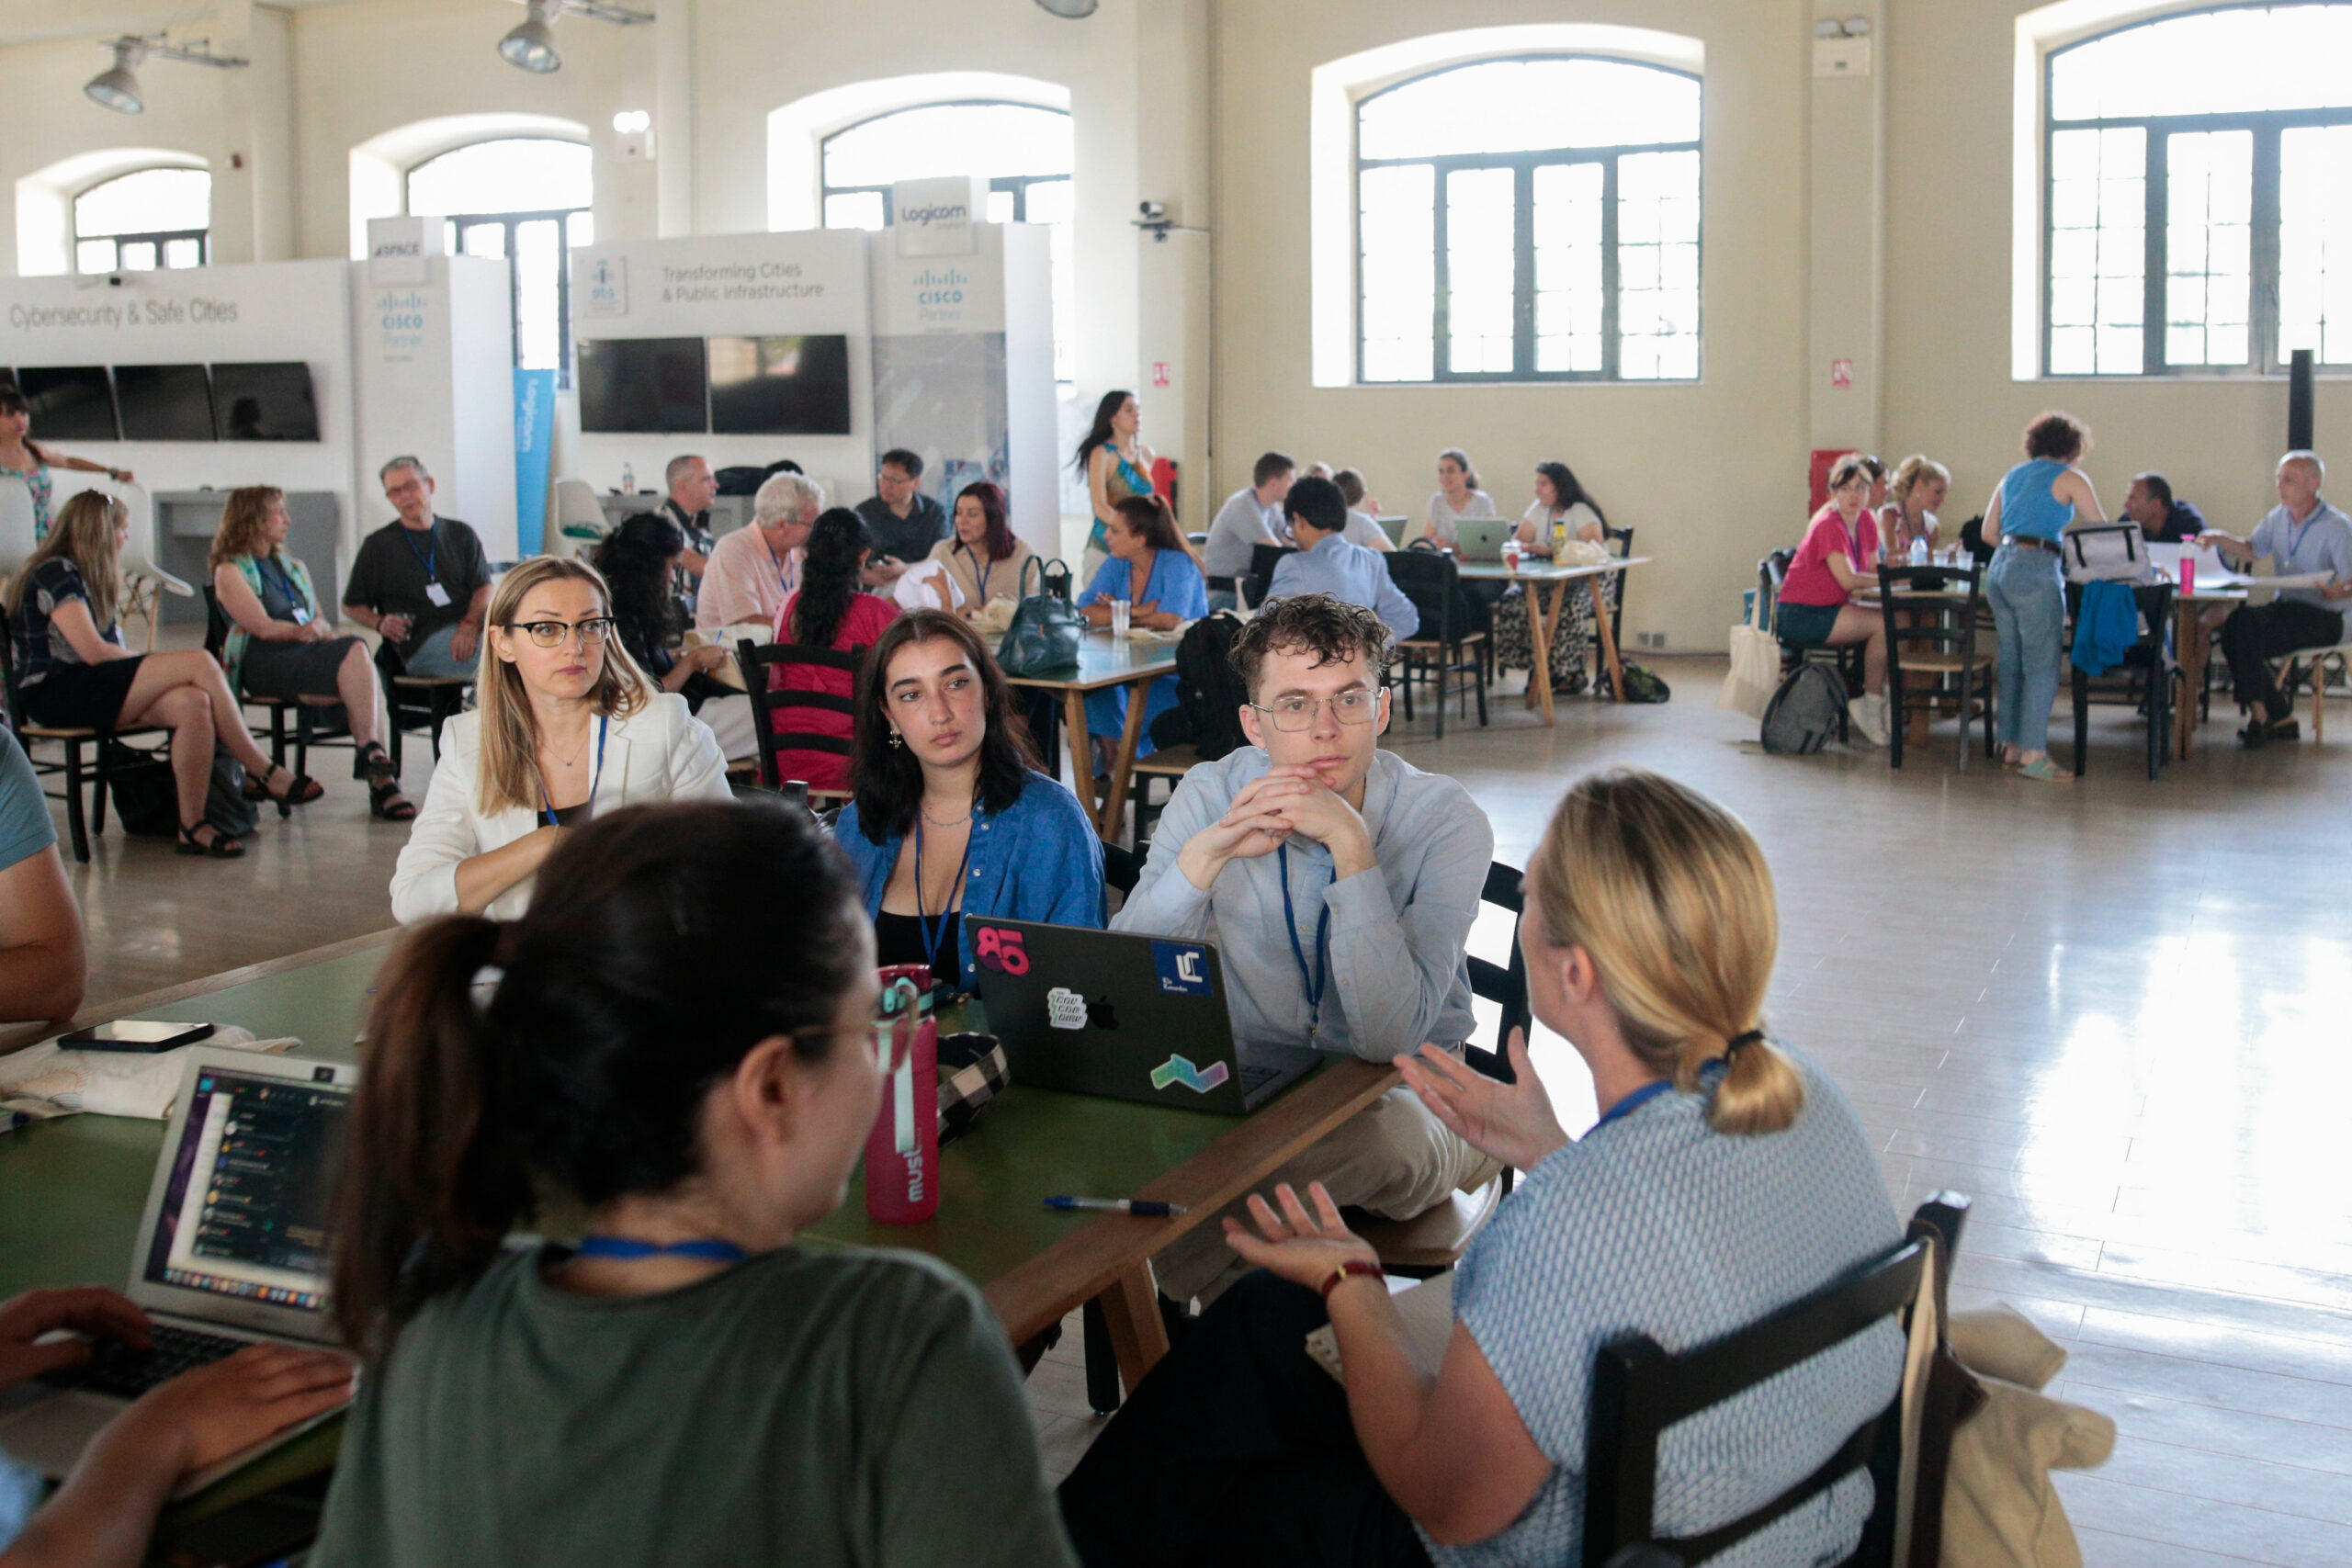 Θεσσαλονίκη: Οι νέες τάσεις στην επικοινωνία στην 7η Διεθνή Θερινή Ακαδημία Δημοσιογραφίας THISAM